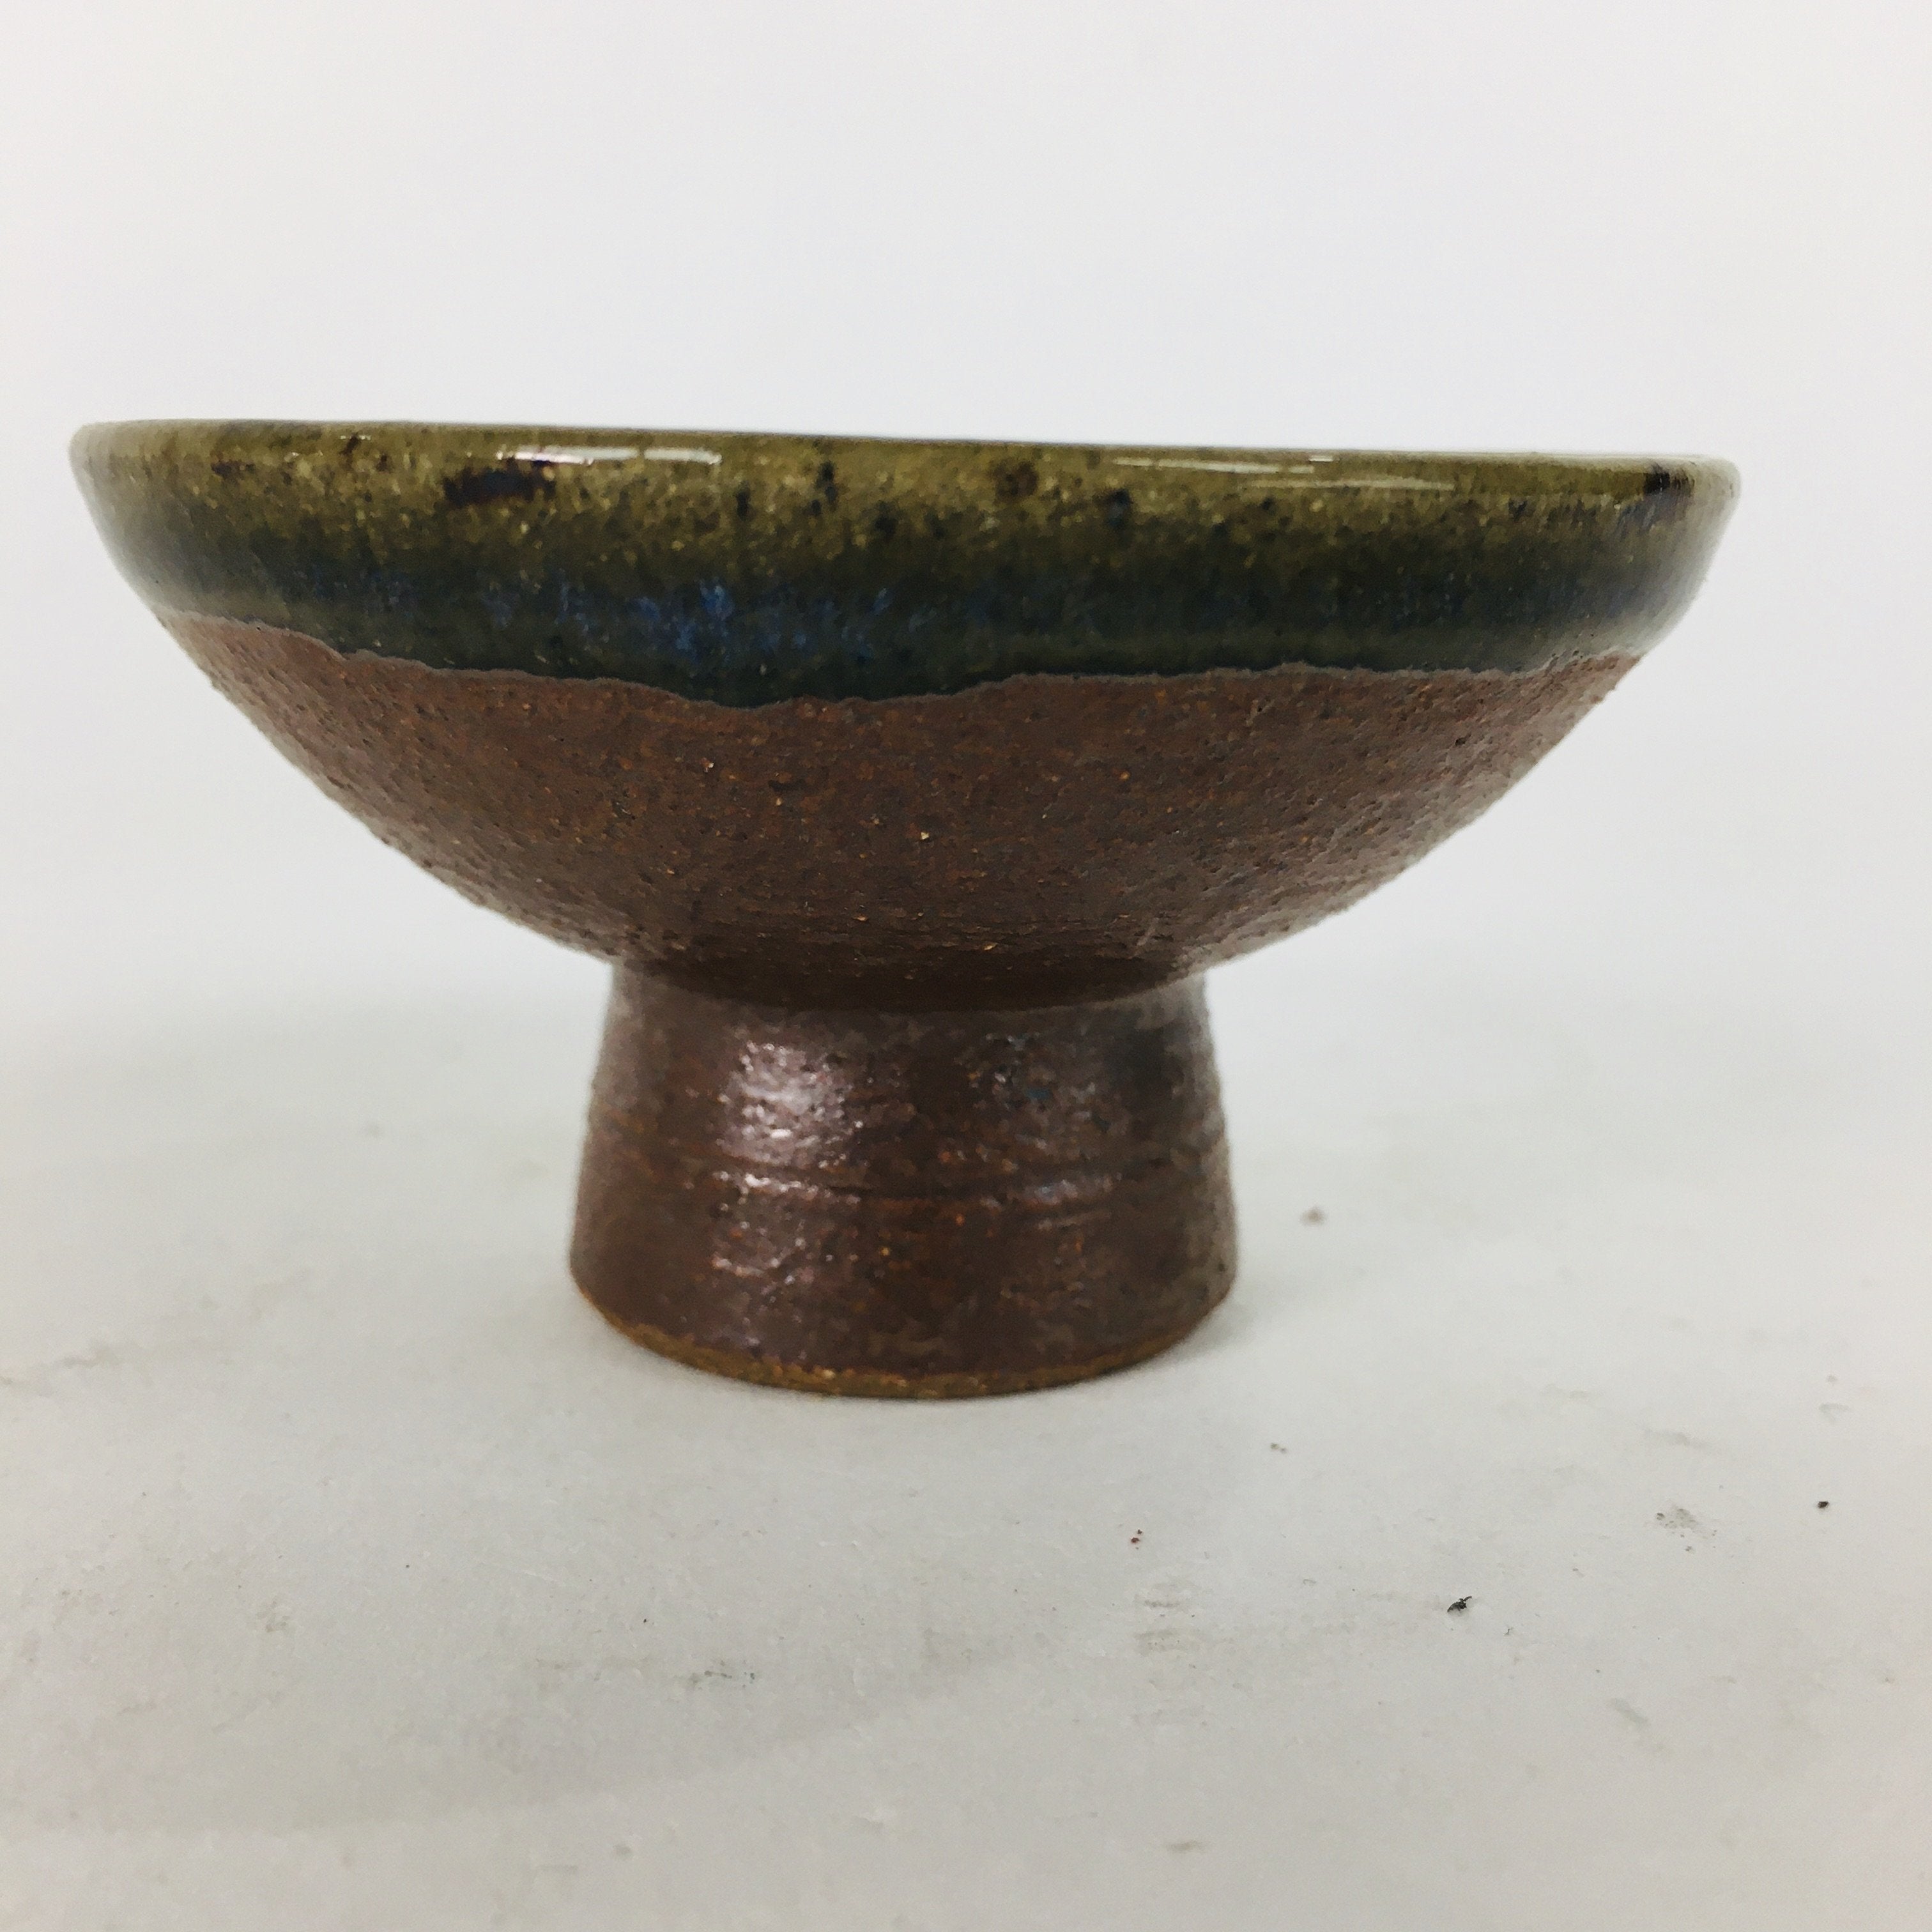 Japanese Ceramic Sake Cup Vtg Pottery Sakazuki Ochoko Brown Bluish White GU 918